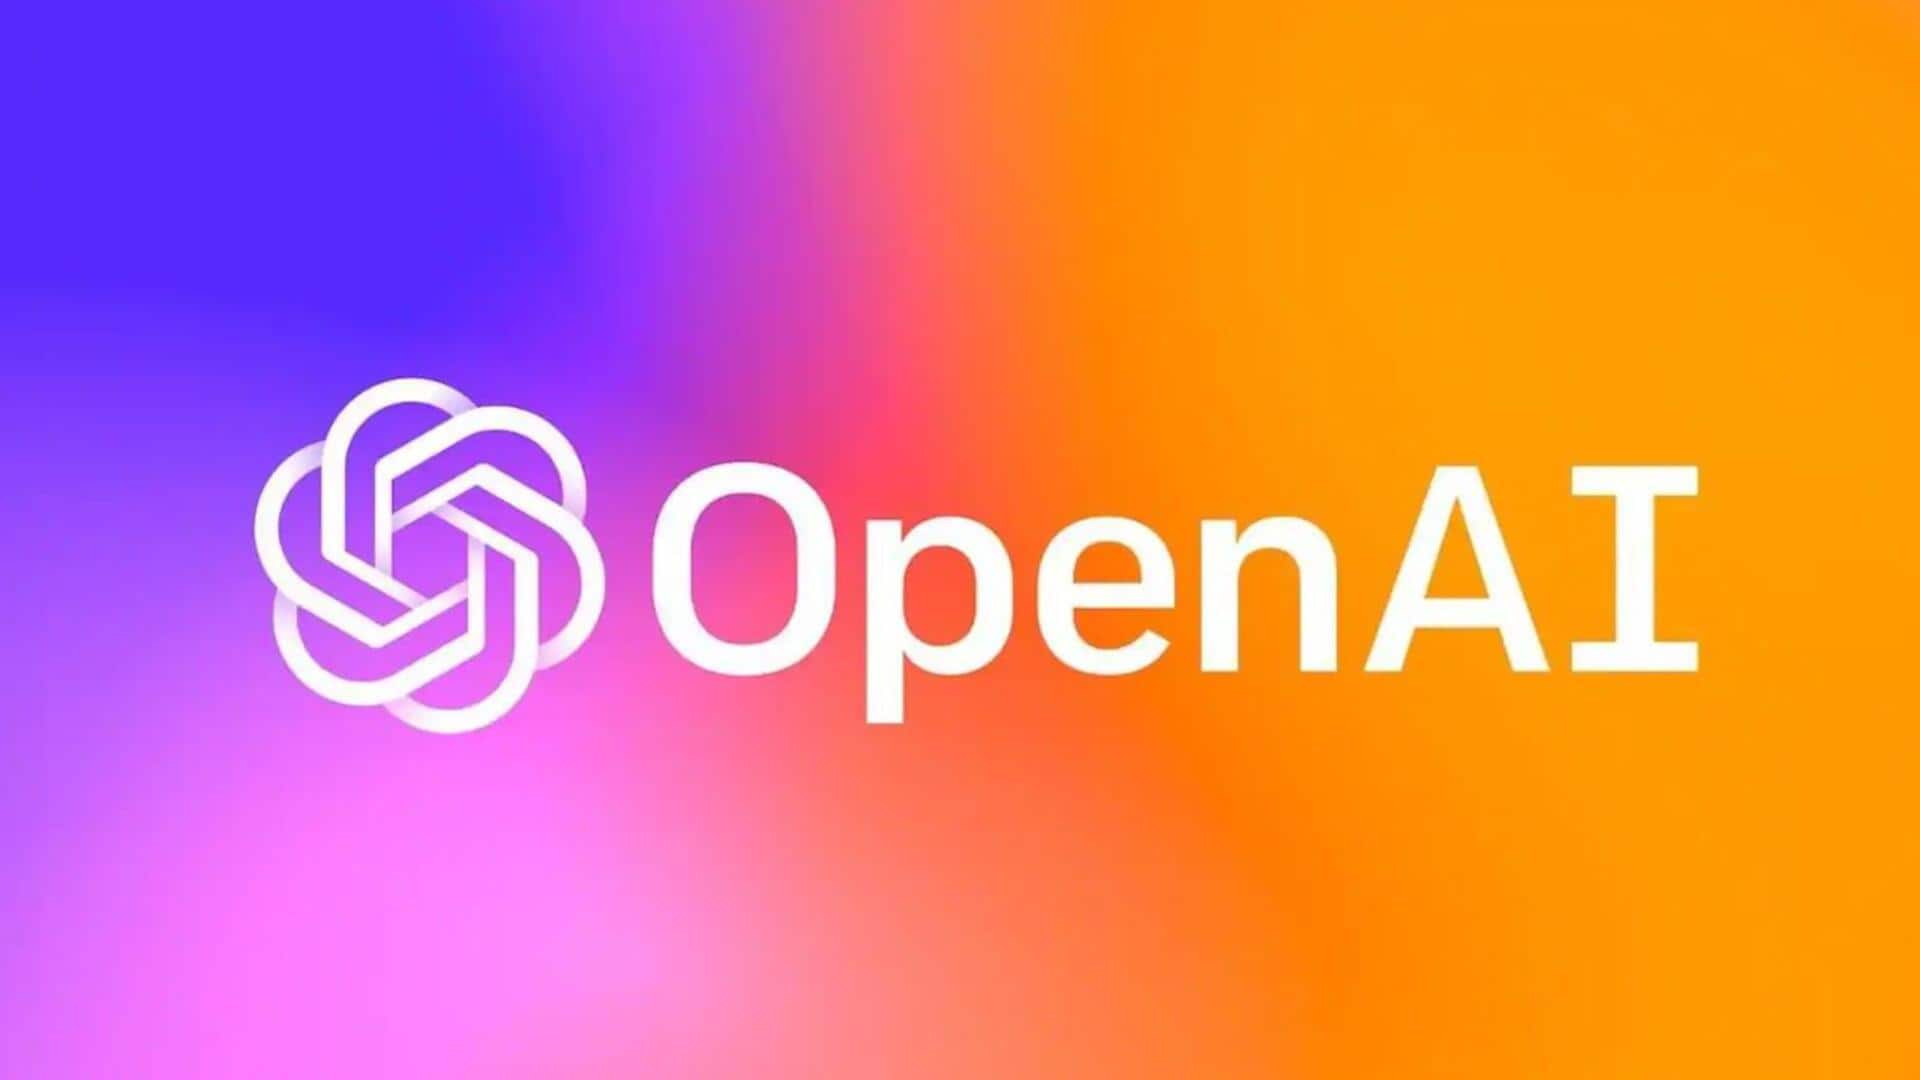 OpenAI अगले हफ्ते लॉन्च कर सकती है अपना सर्च प्रोडक्ट, गूगल को देगी टक्कर